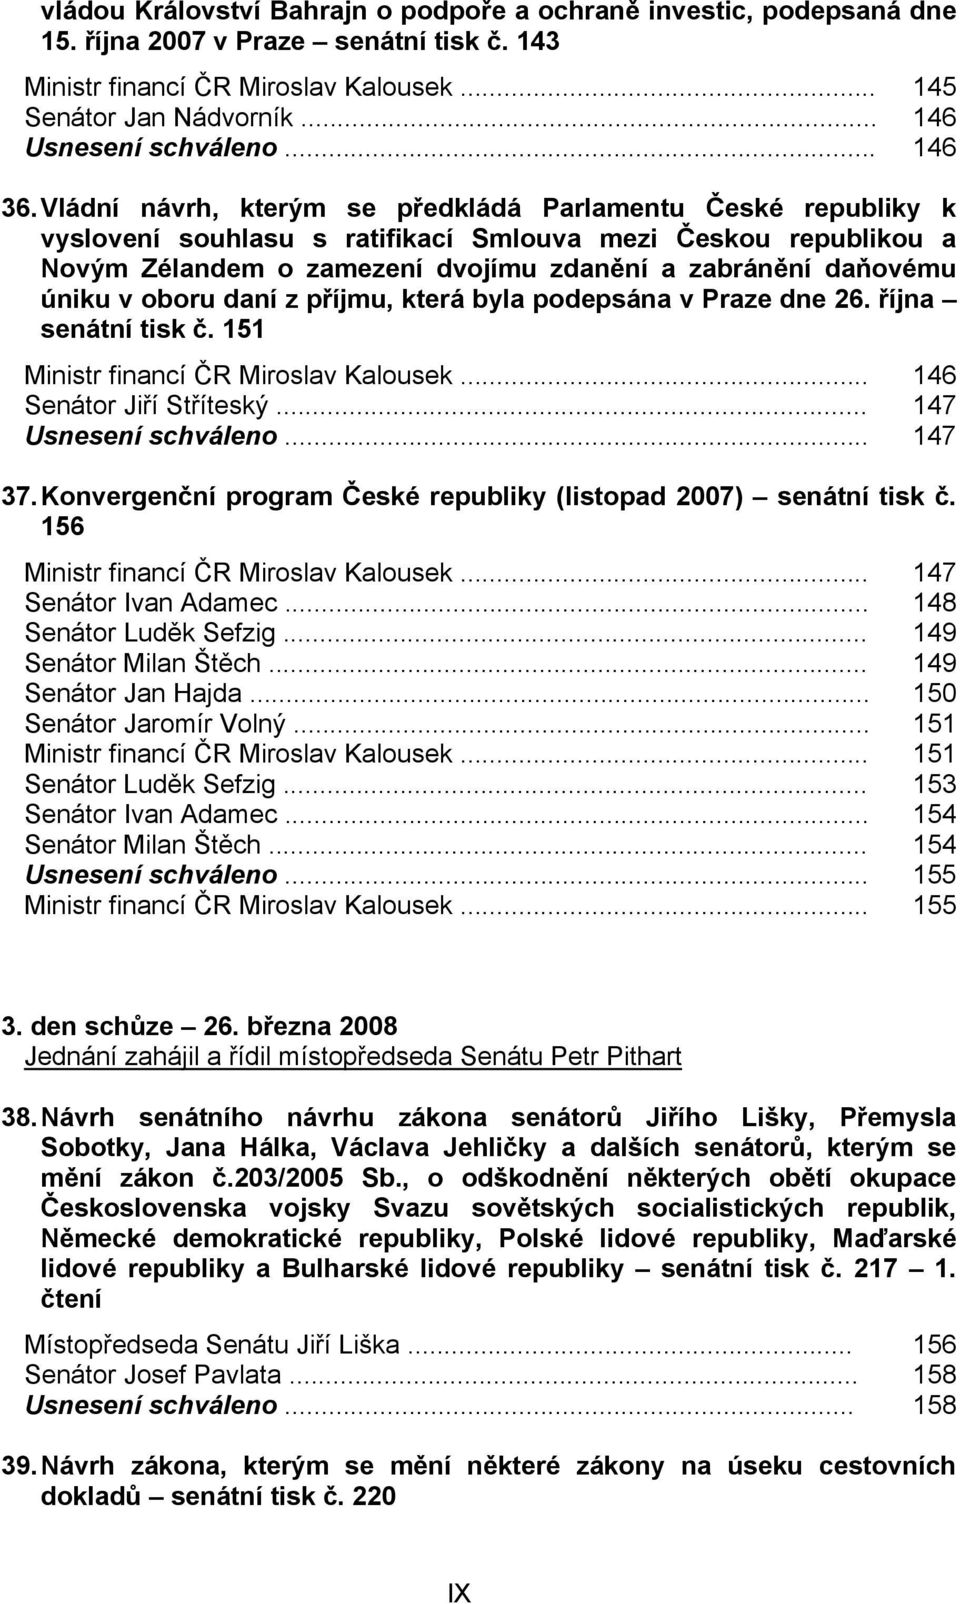 Vládní návrh, kterým se předkládá Parlamentu České republiky k vyslovení souhlasu s ratifikací Smlouva mezi Českou republikou a Novým Zélandem o zamezení dvojímu zdanění a zabránění daňovému úniku v